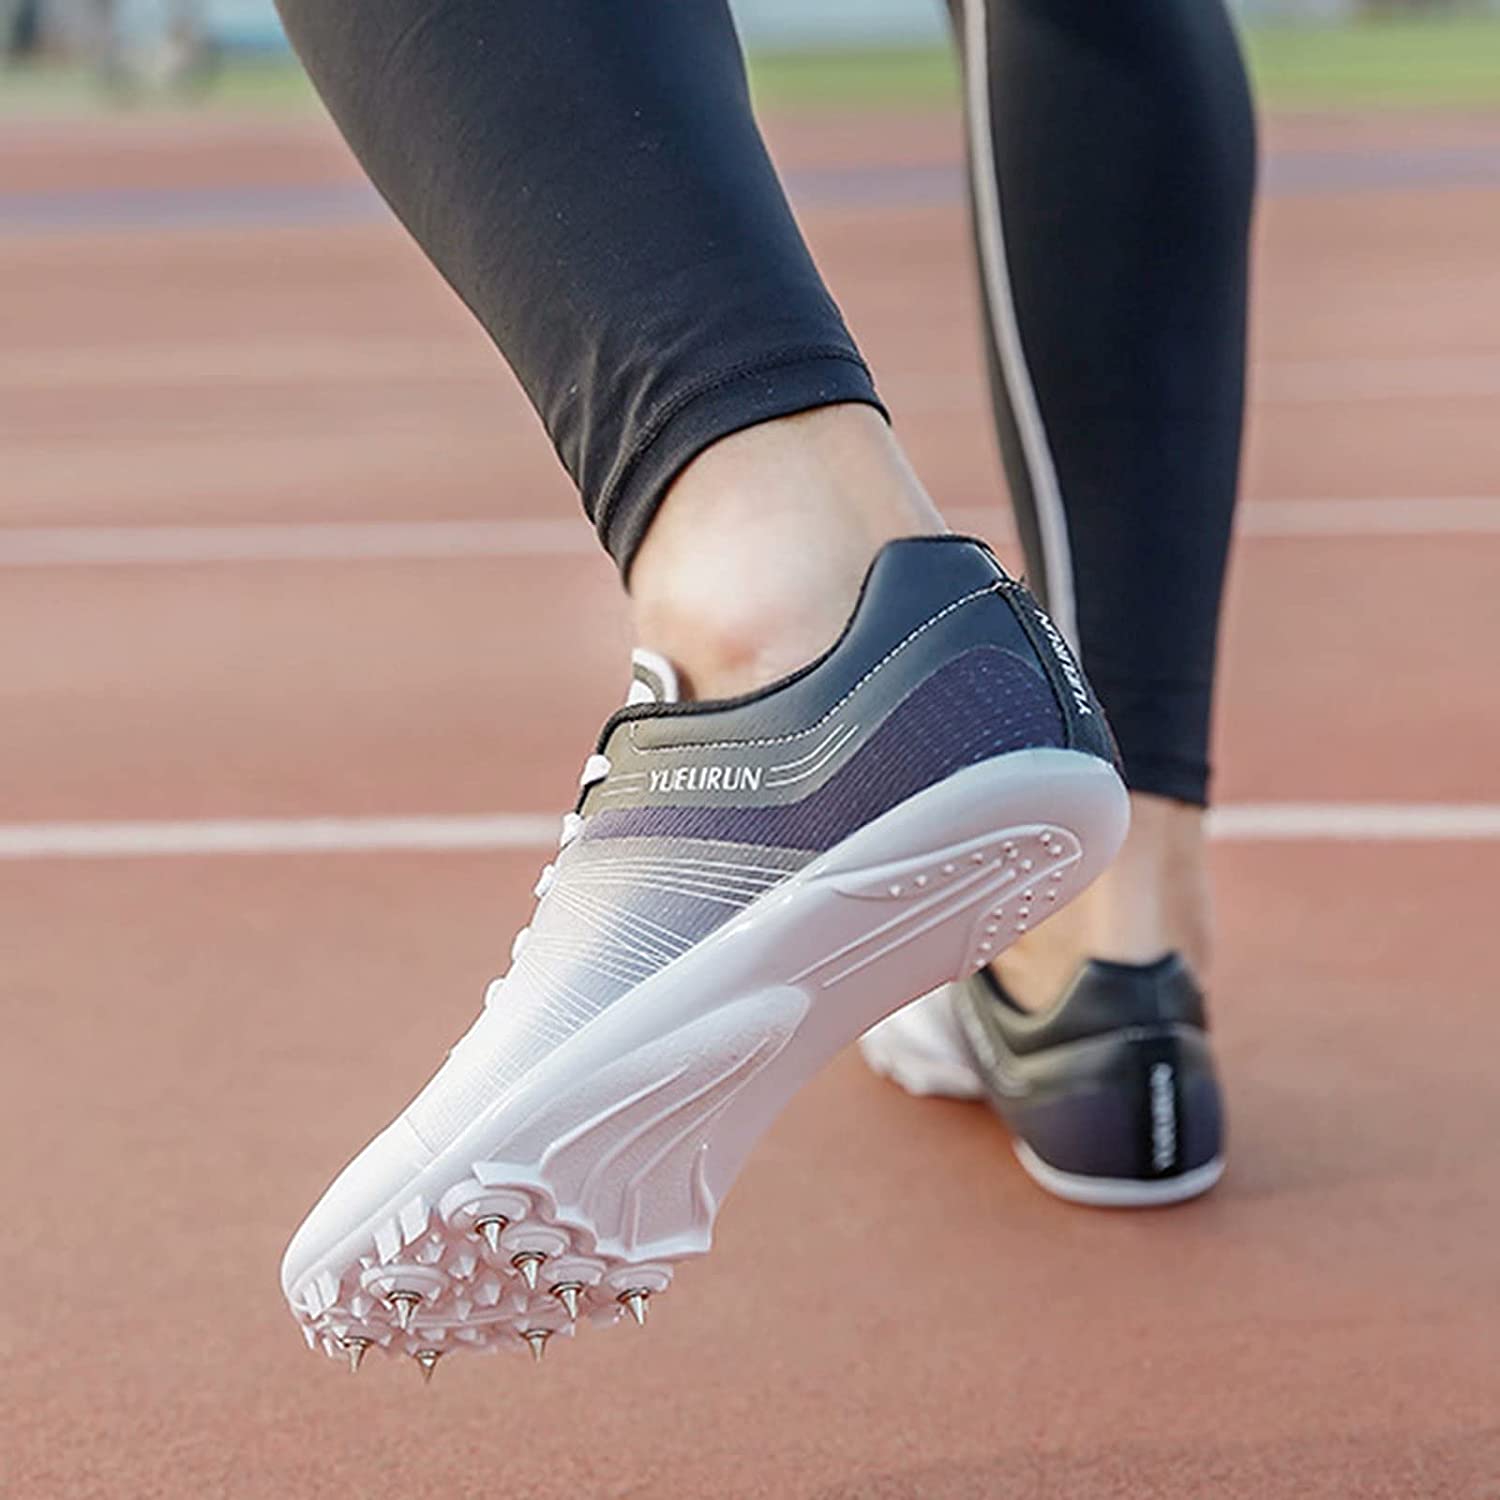 Pointes d'athlétisme : Comment choisir les bonnes chaussures à pointes ?